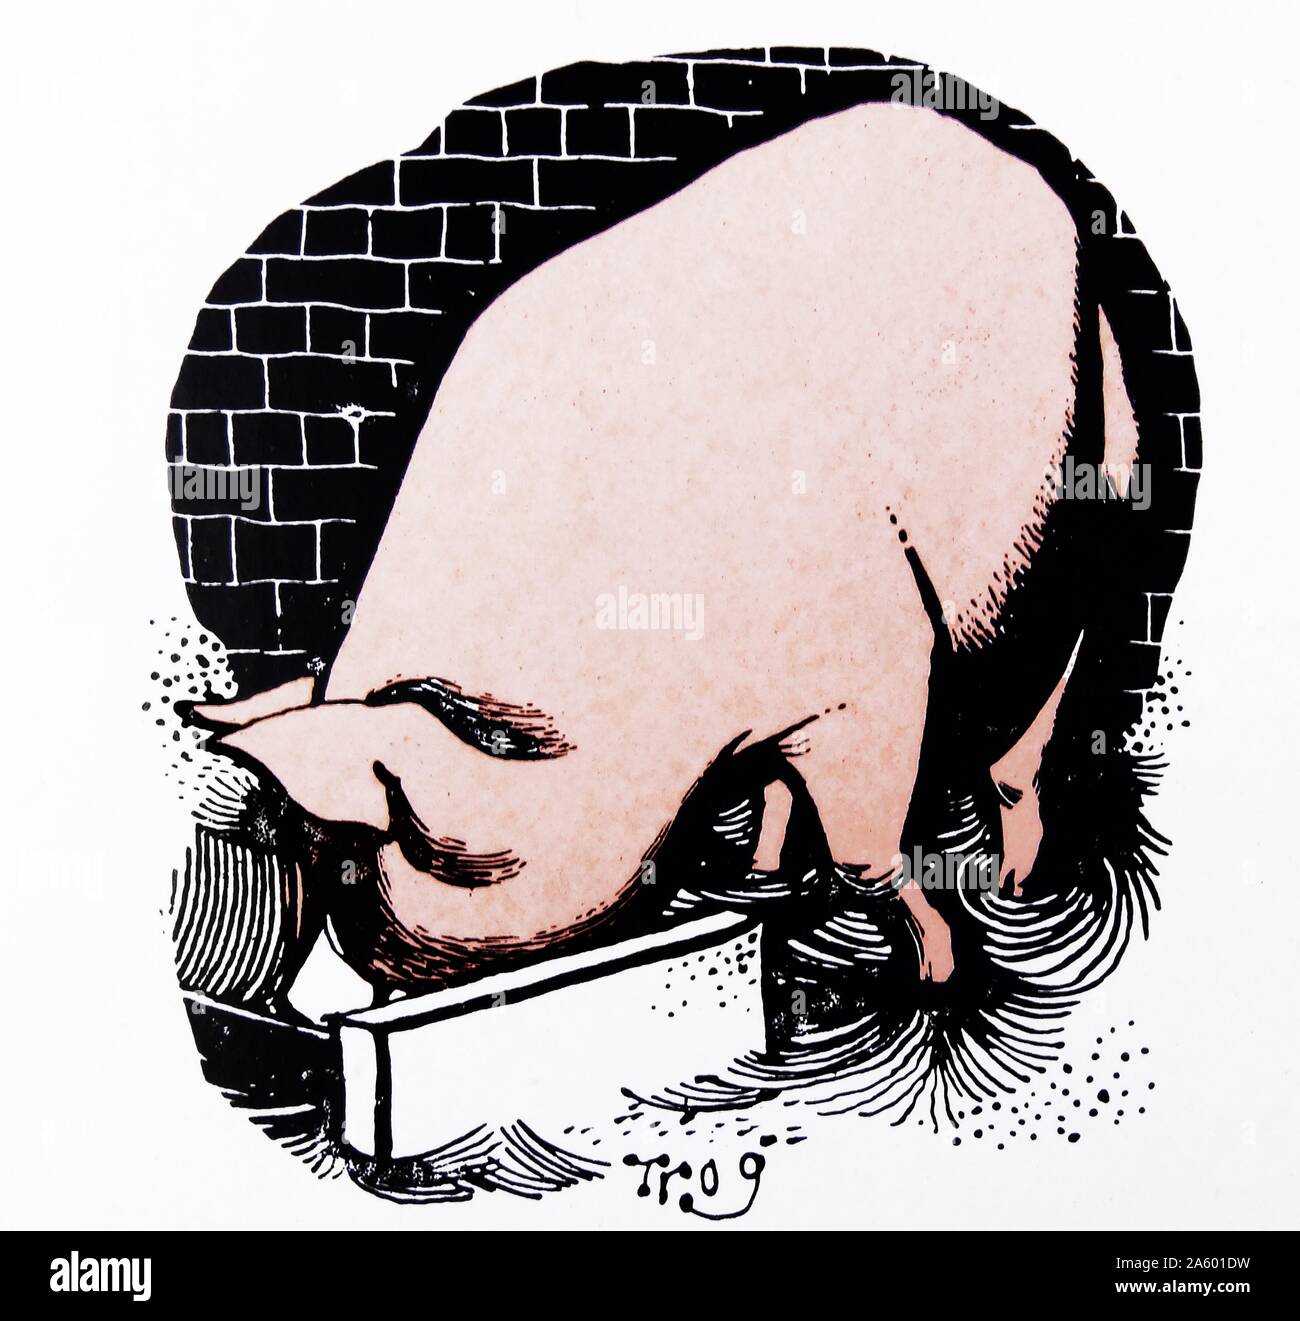 Karikatur von einer Schweinemast Walter Ernest "Wally" Fawkes (geb. 1924). Britisch-kanadischen jazz-Klarinettist und satirische Karikaturist. Als Karikaturist arbeitete er in der Regel unter dem Namen "Trog". Stockfoto